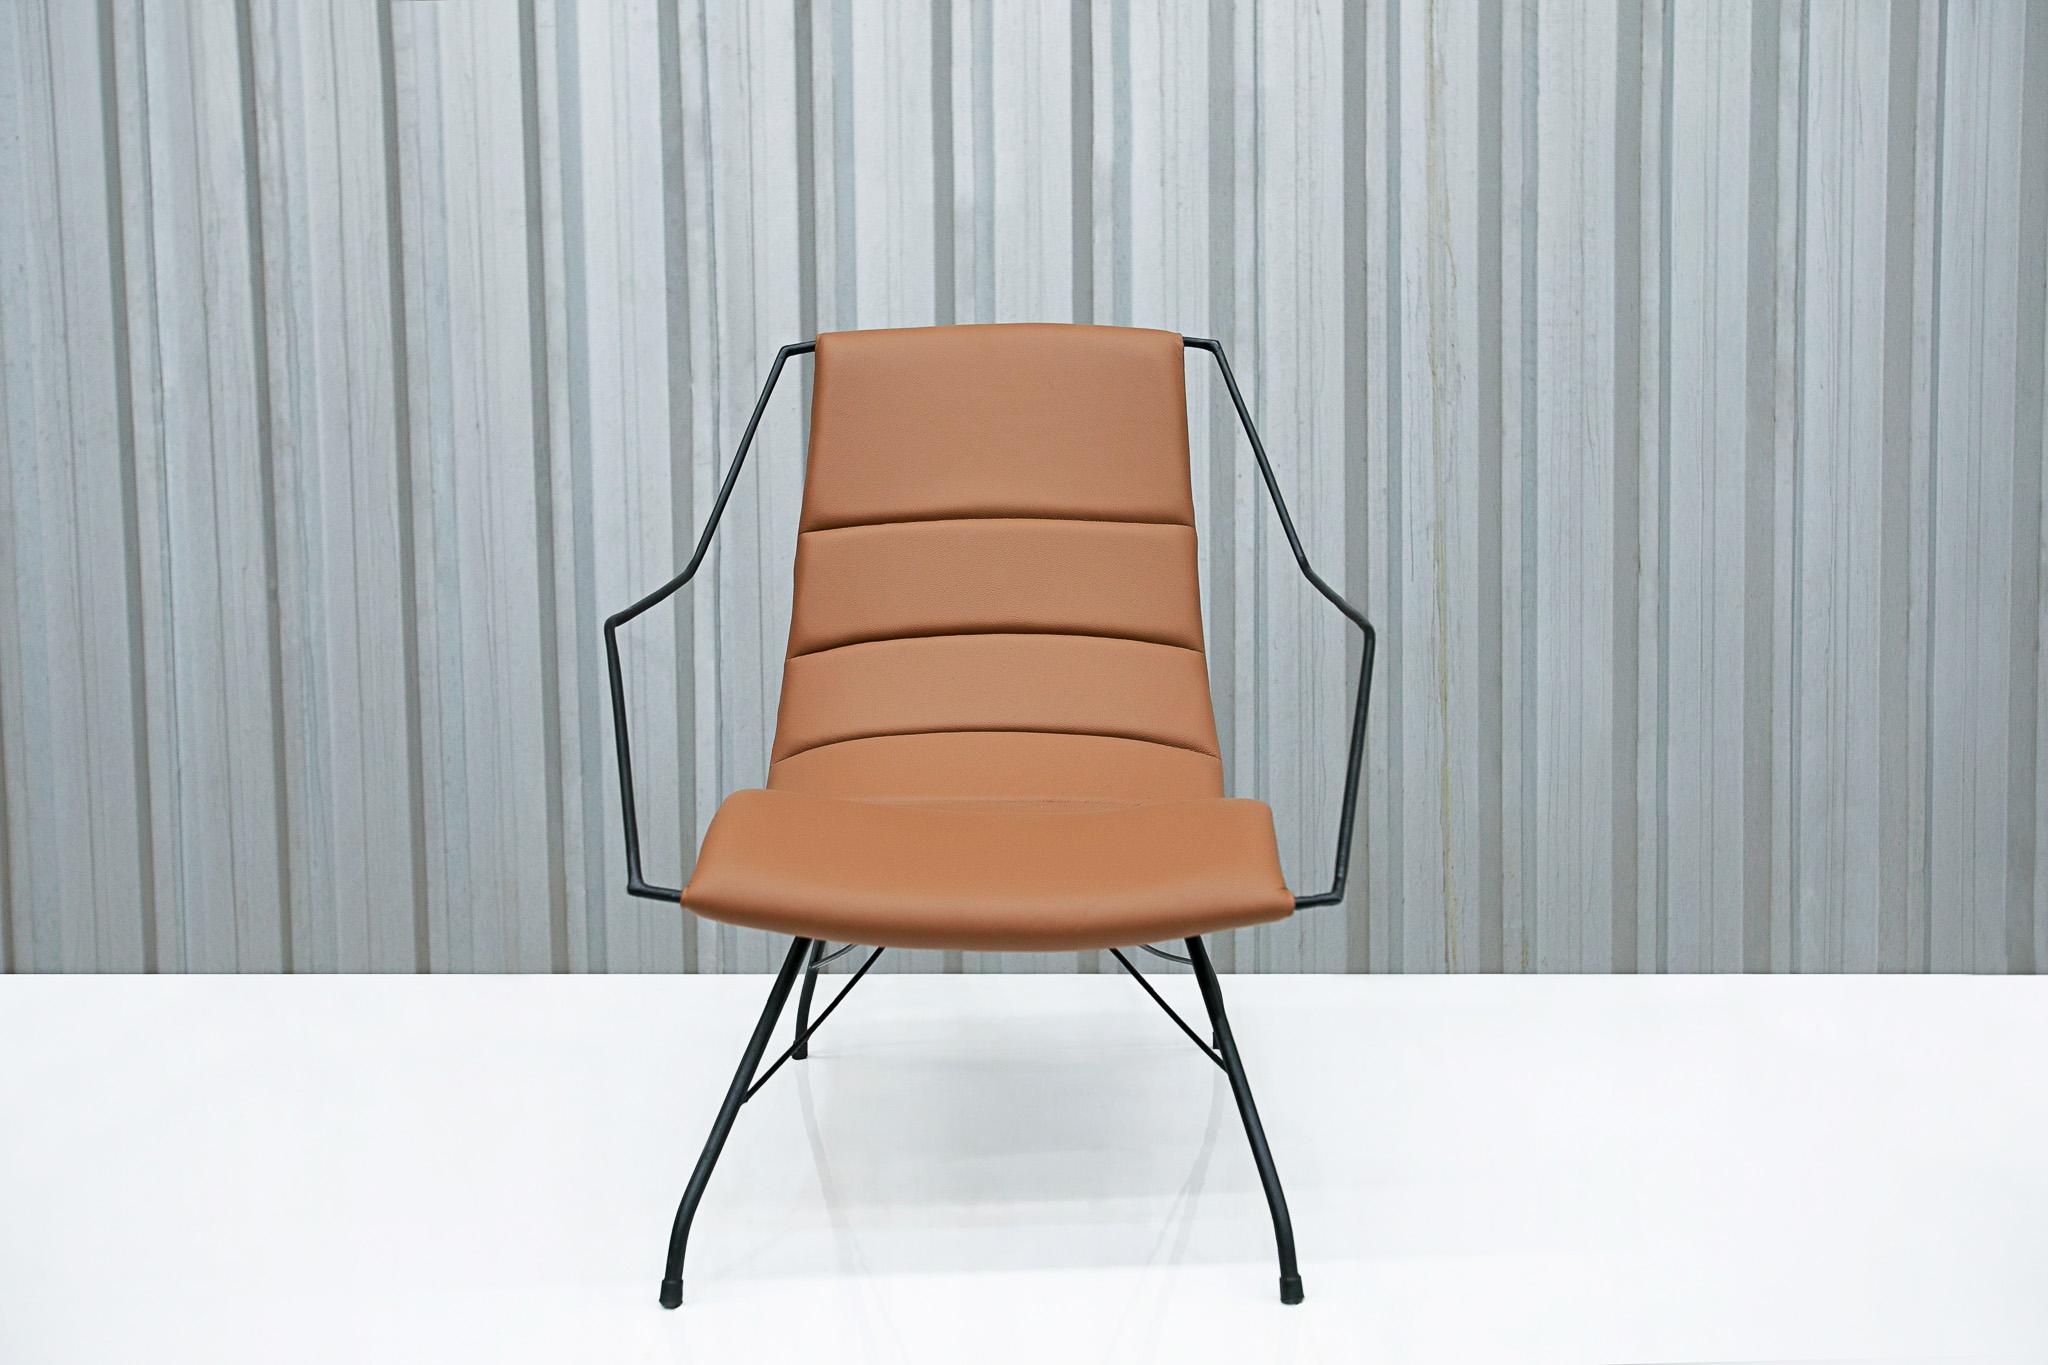 Dieser moderne brasilianische Sessel aus braunem Leder und Eisen von Carlo Hauner, der in den 50er Jahren in Brasilien hergestellt wurde, ist ein Unikat!

Das (damals) beliebte Design folgt demselben Muster wie die ebenfalls beliebten